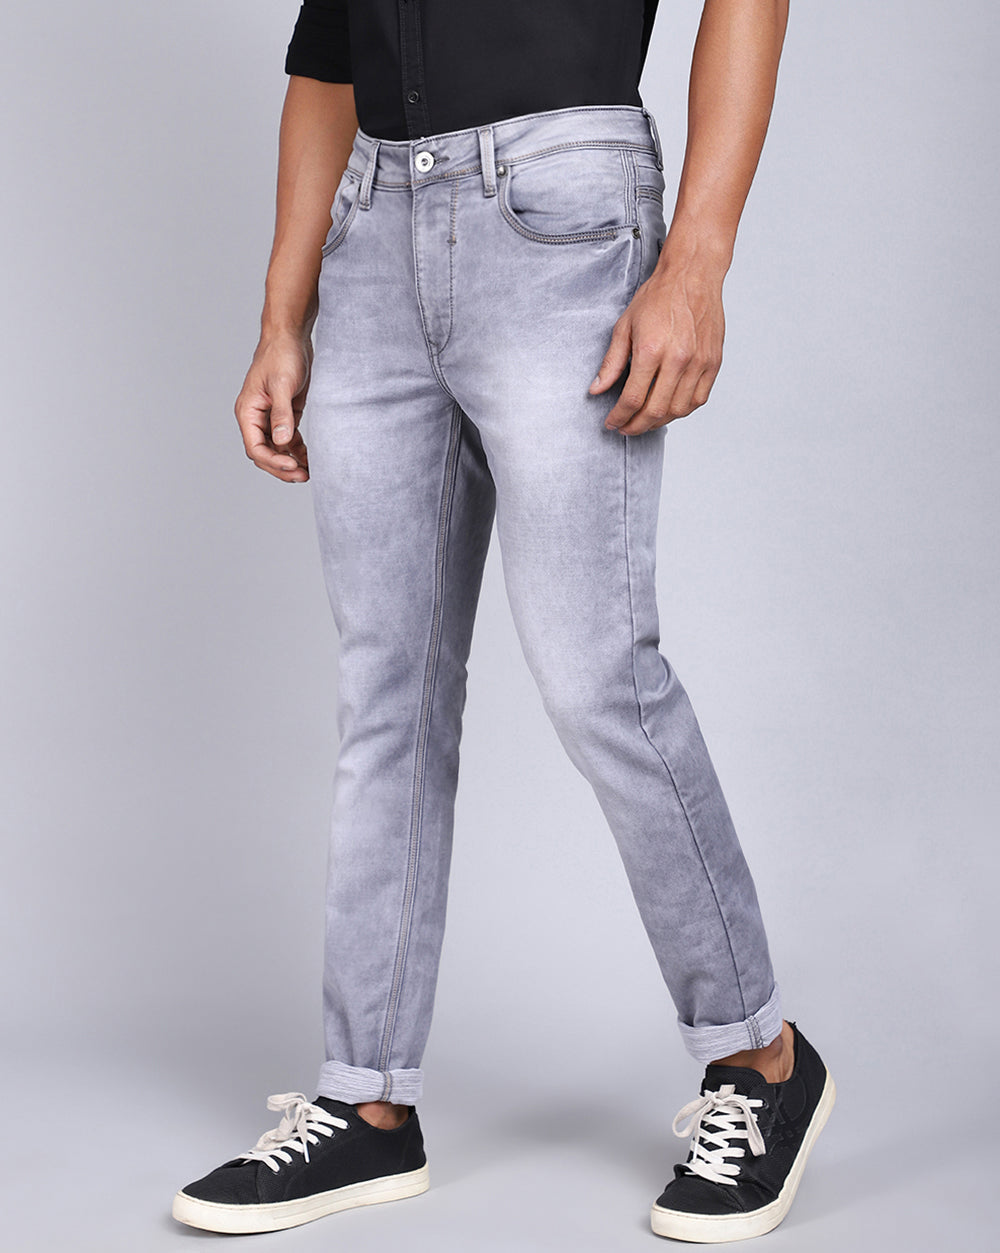 Buy Stylish White Shaded Boys Jeans – Mumkins